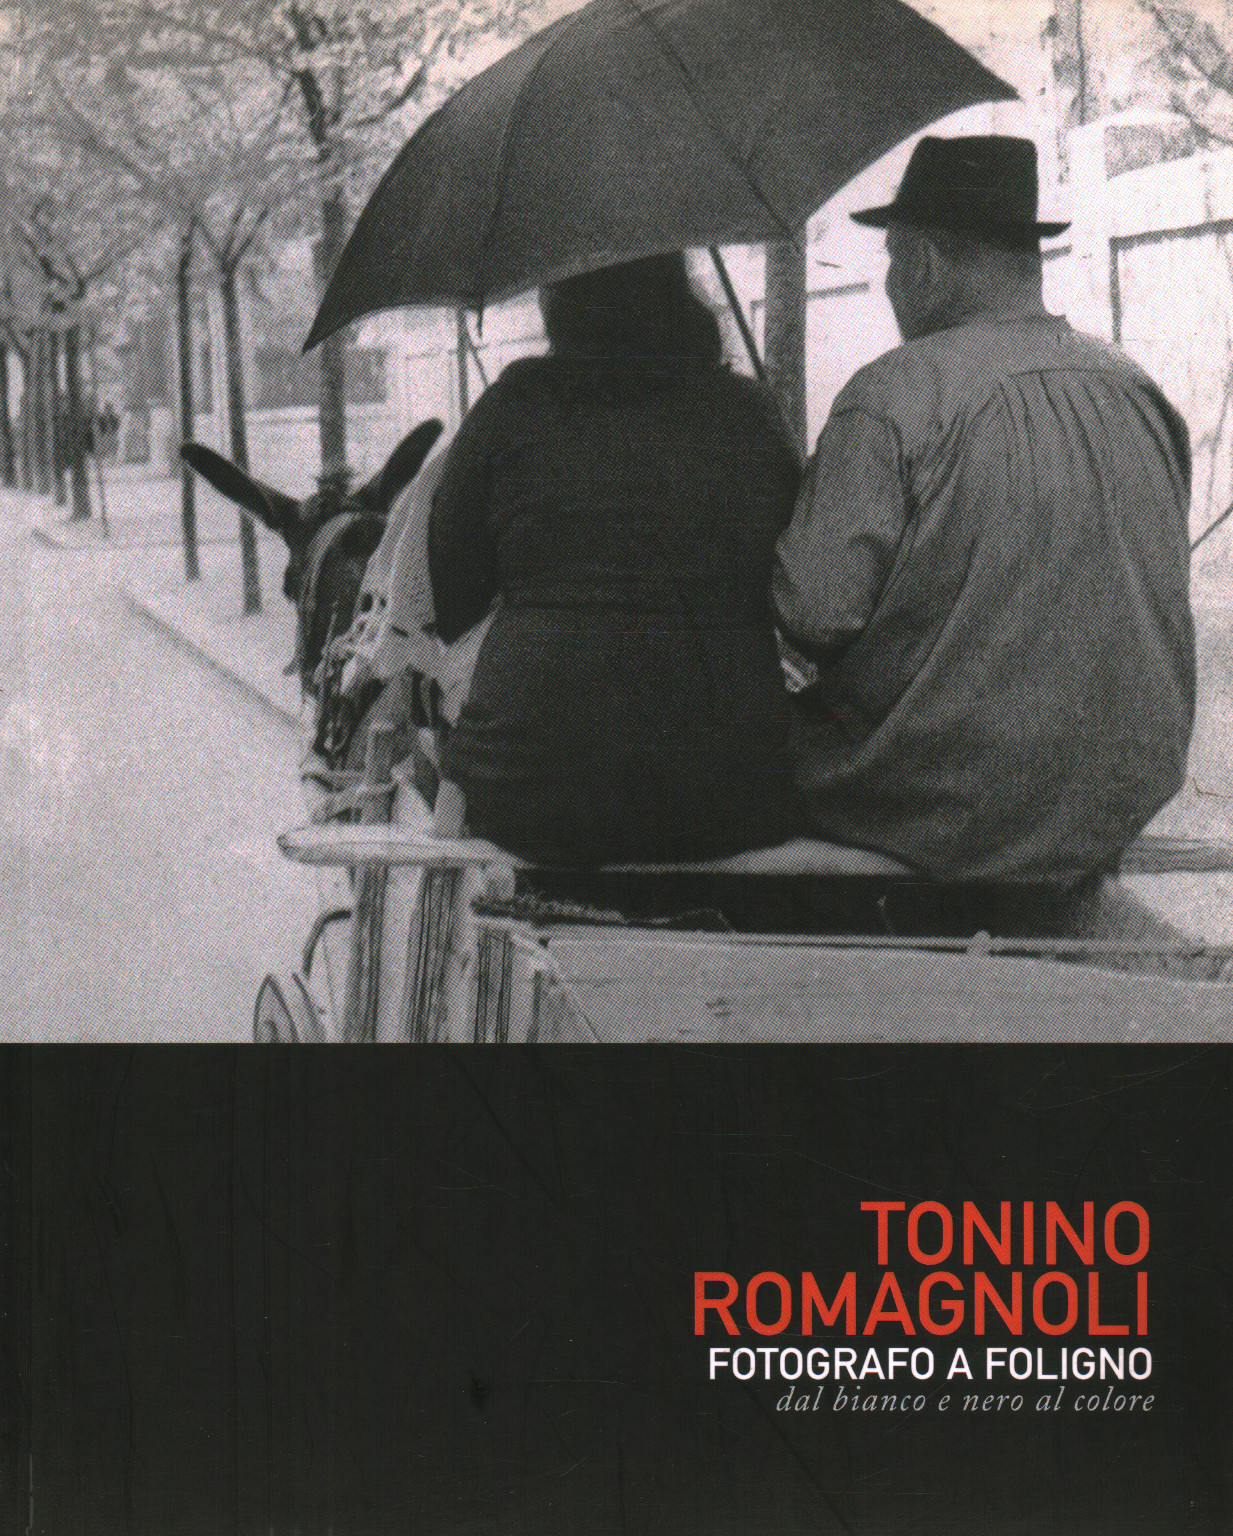 Tonino Romagnoli. Fotógrafo en Foligno. Blanco , s.una.